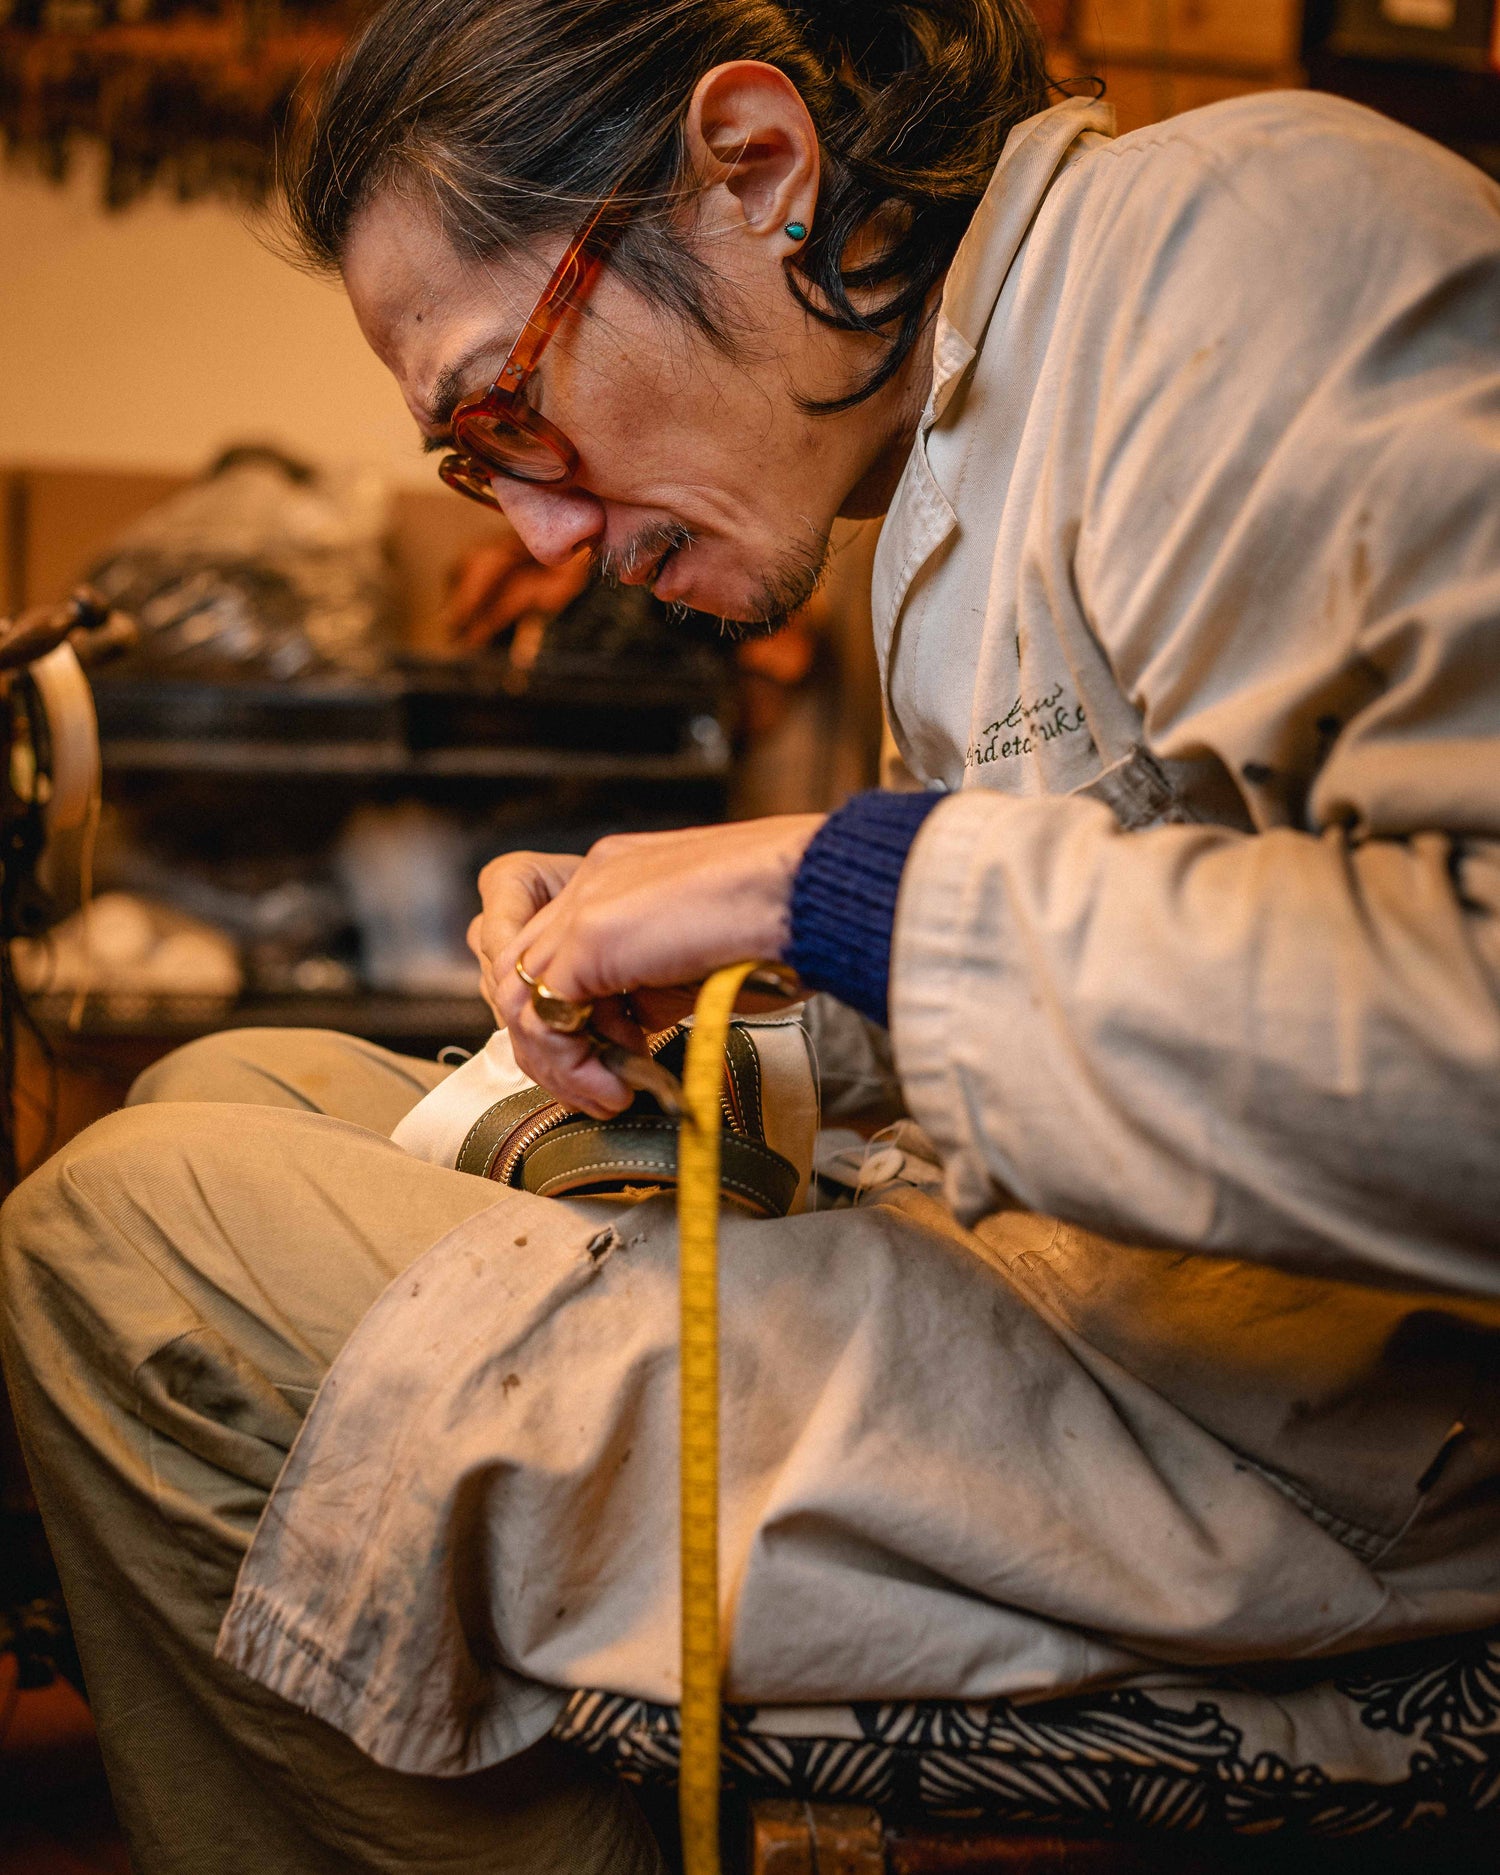 Hidetaka Fukaya working in his workshop in Florence Italy